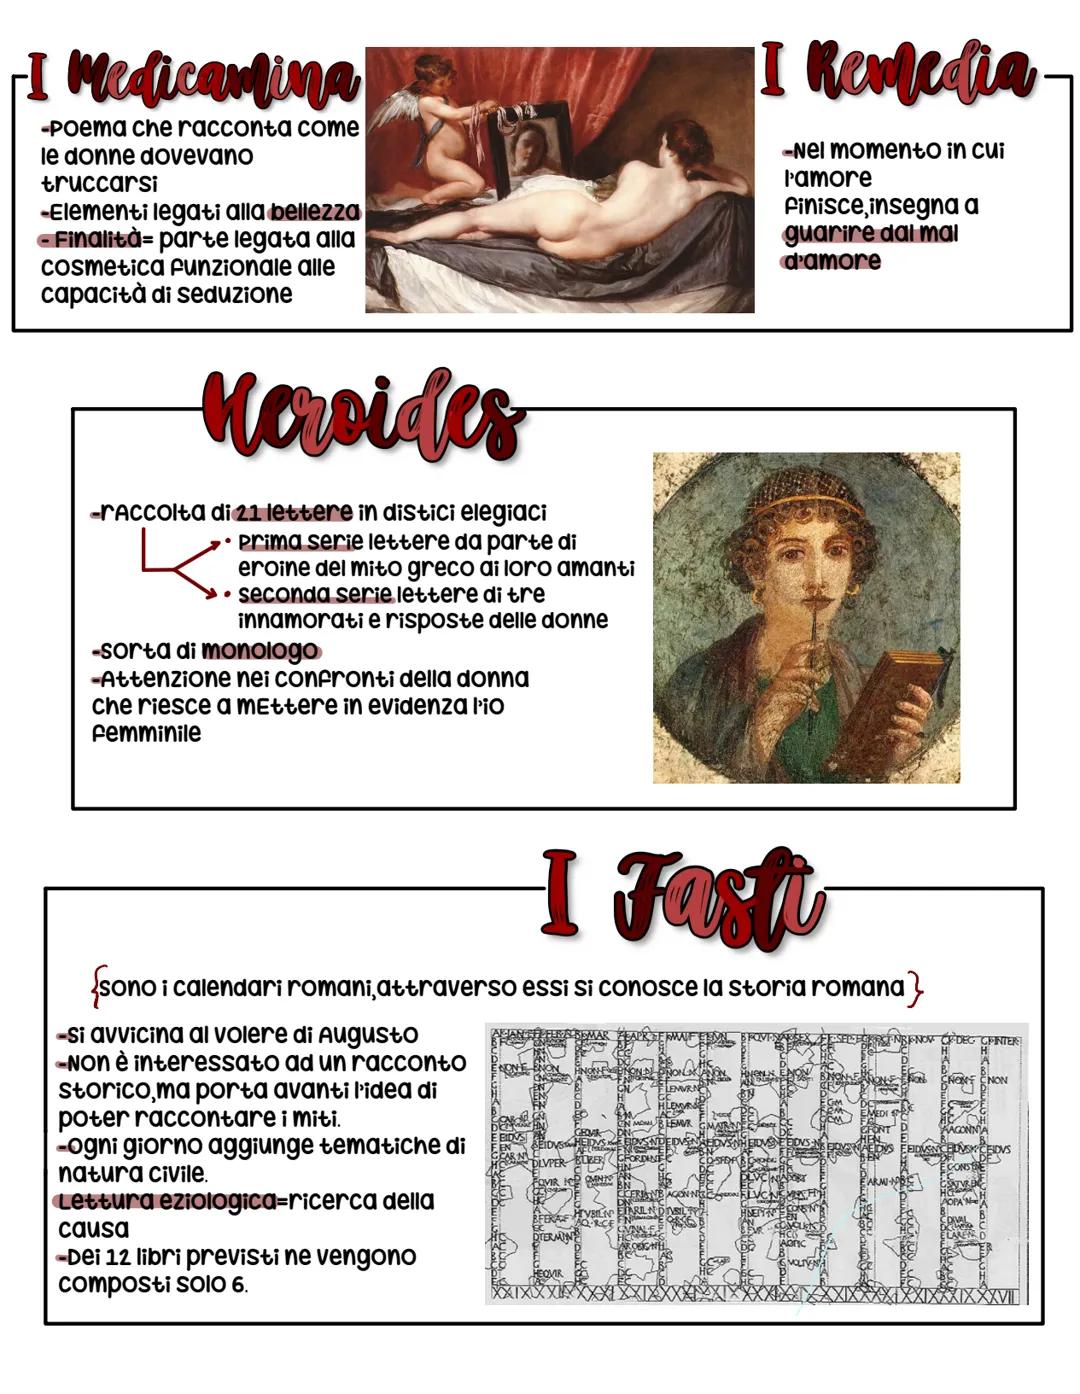 Vita
Publio Ovidio Nasone:
-Nasce nel 43 a.c
-Riceve una formazione retorica
-Entra nel circolo letterario di Messalia corvino
-Dopo l'8 vie